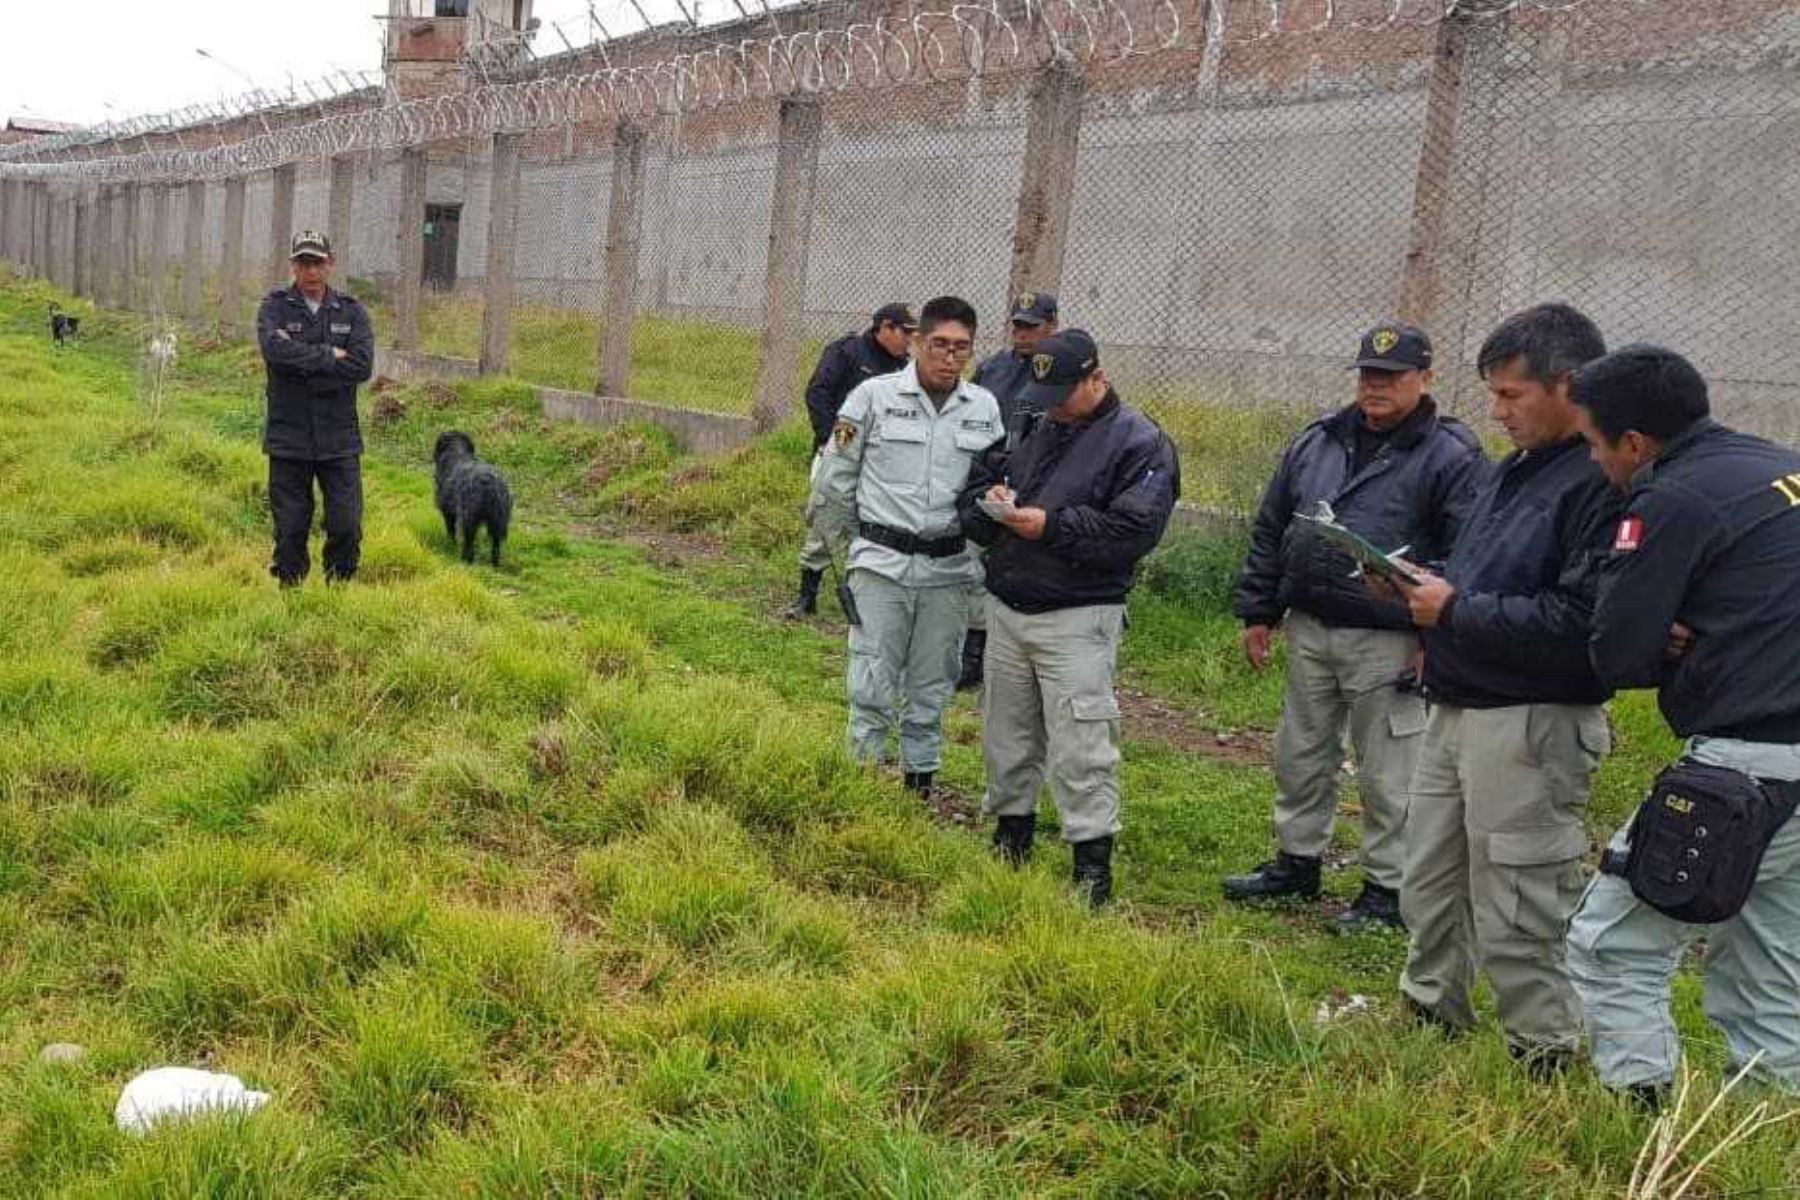 Agentes del Instituto Nacional Penitenciario (INPE) hallaron en el interior de una bolsa plástica dos paquetes precintados que contenían marihuana, celulares y accesorios que fueron lanzados por extraños al interior del establecimiento penitenciario de varones de Cusco.